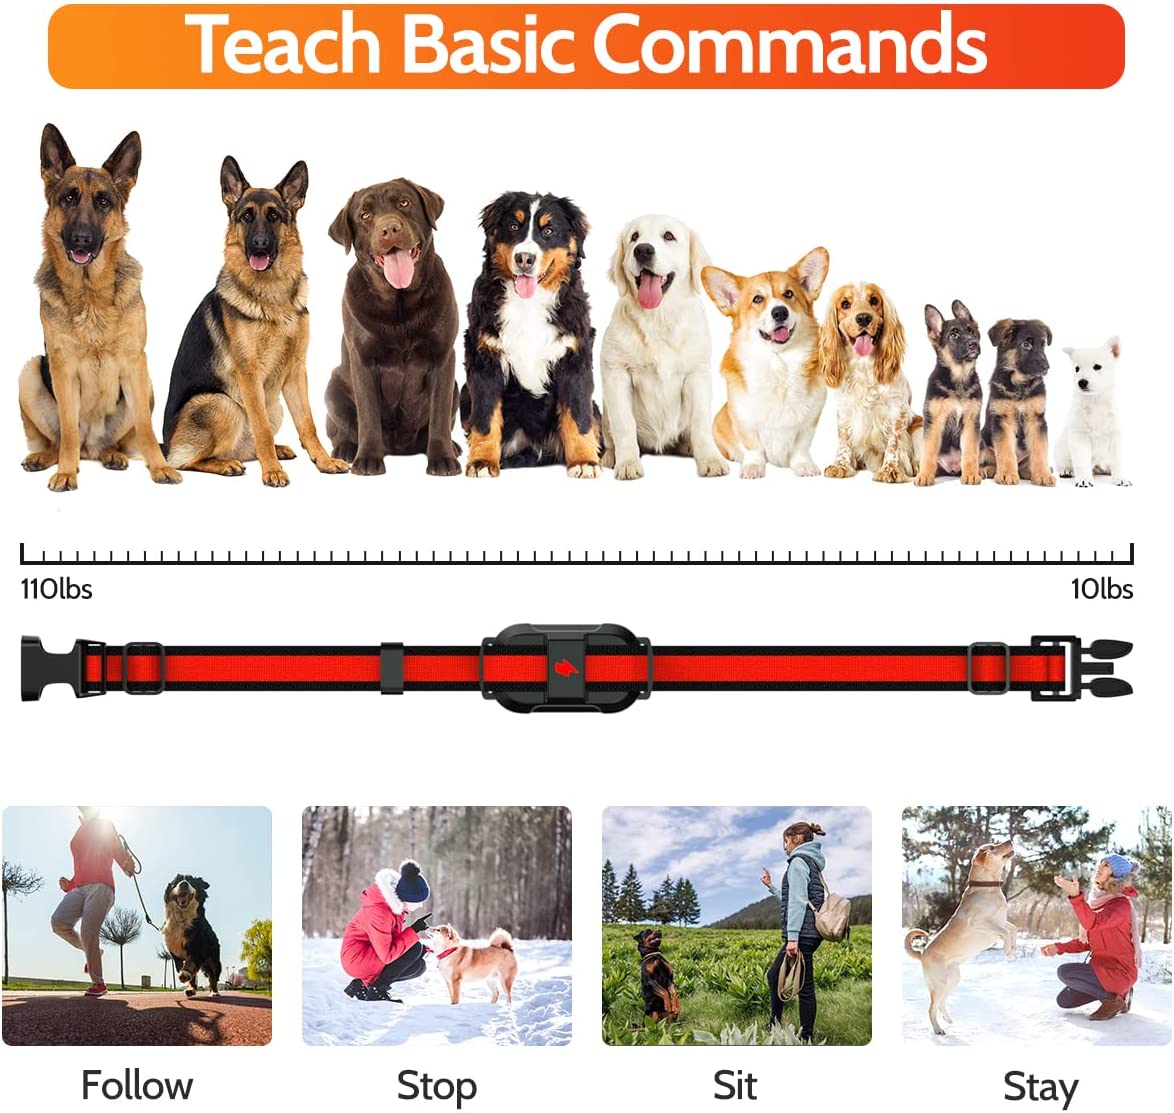  این قلاده آموزش سگ دارای 4 حالت از جمله بیپ، لرزش، شوک (1-99) و نور است، به راحتی می توان سگ خود را در فضای باز یا داخل خانه آموزش داد.